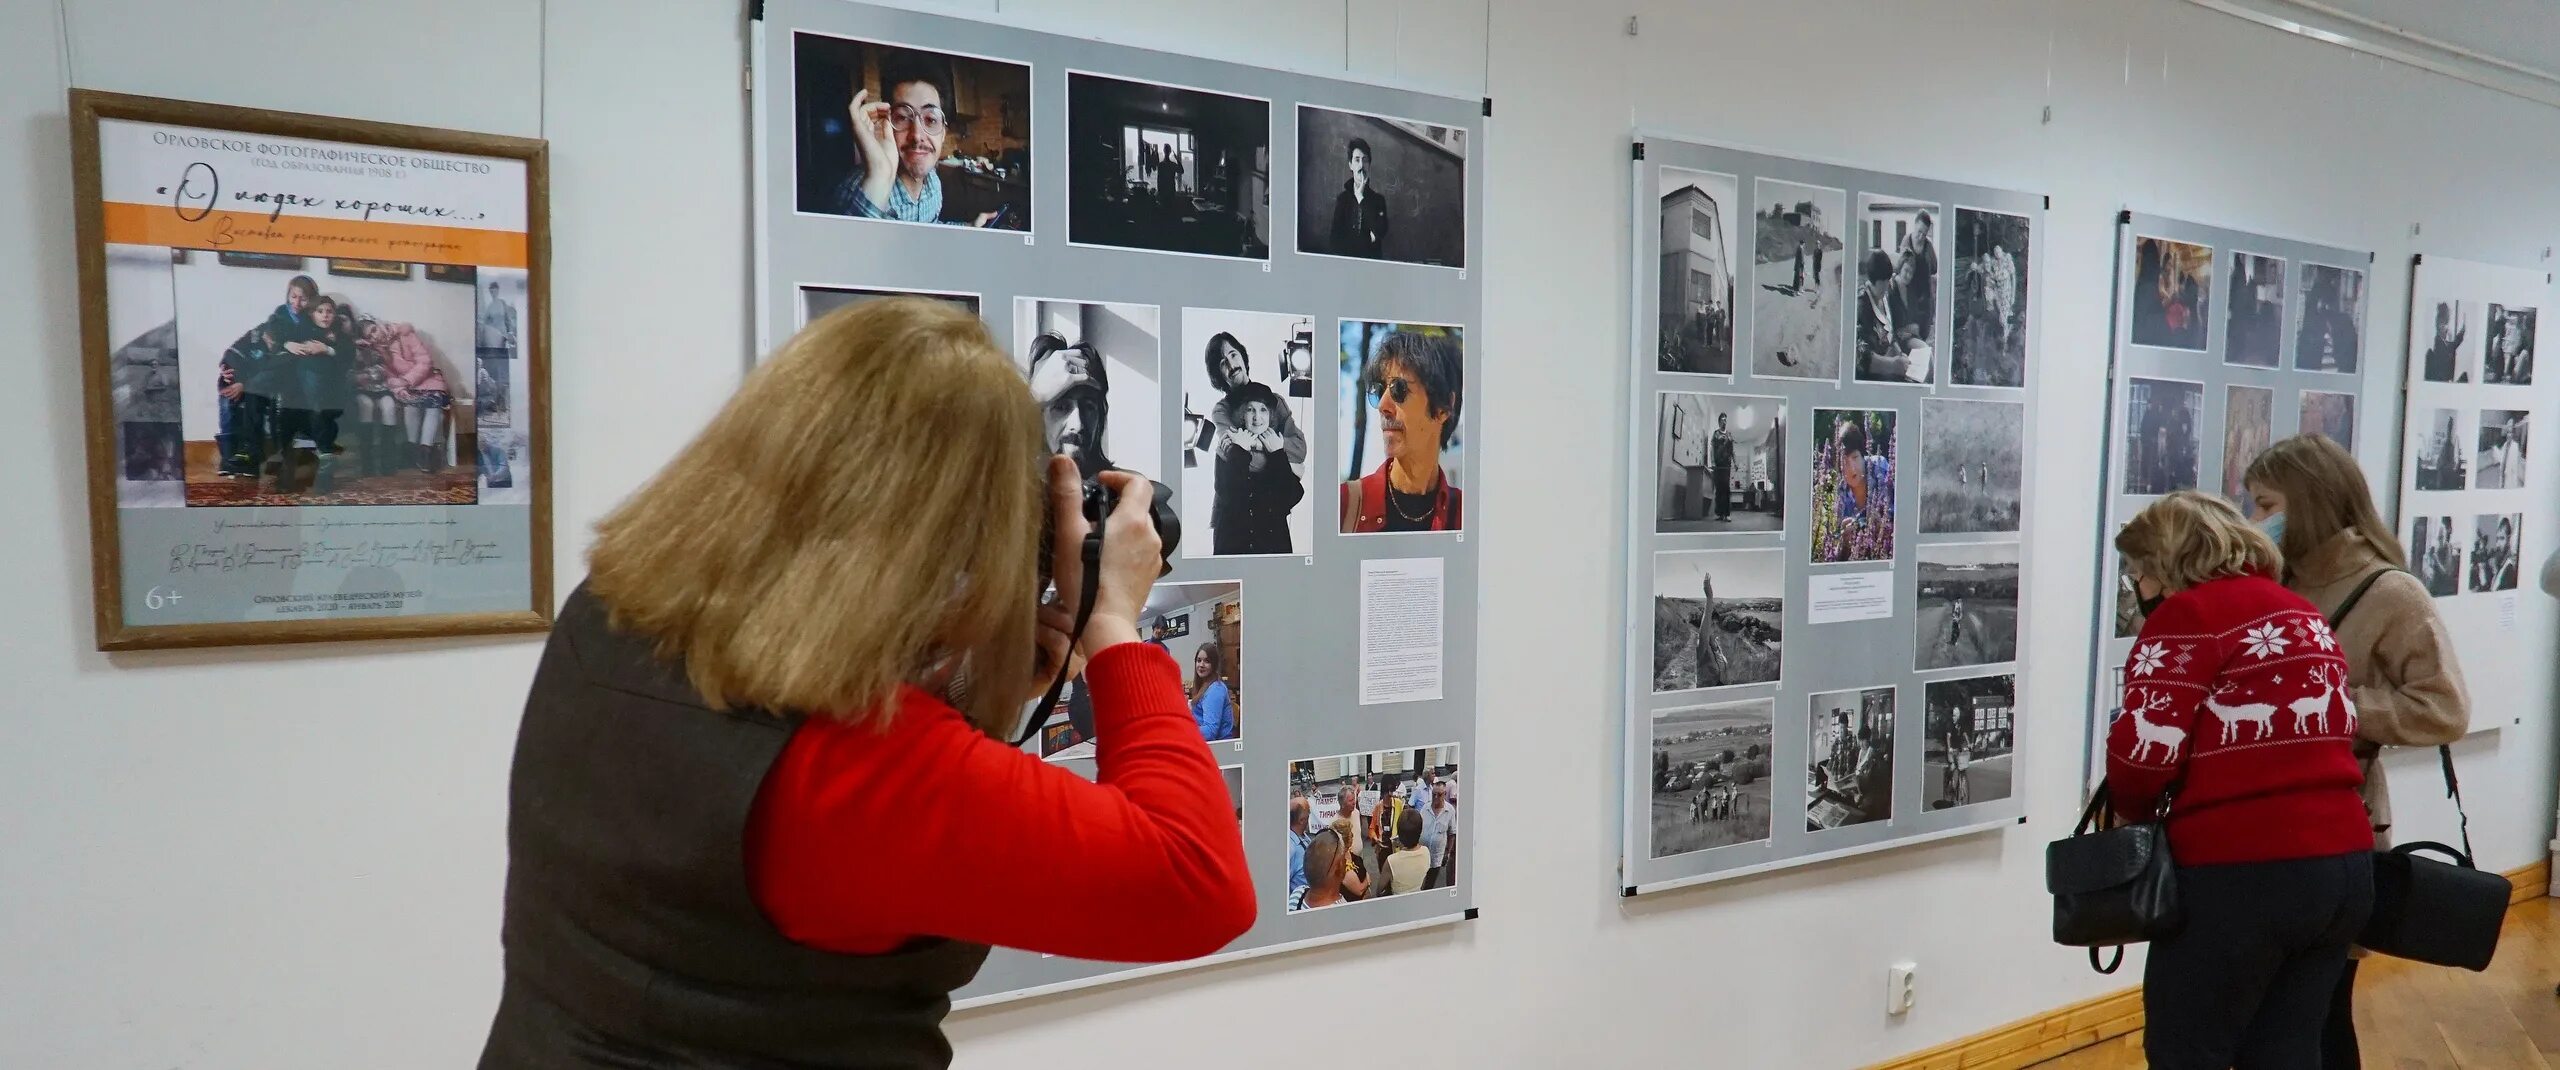 Выставка фотографий в Орле. Фотовыставка важных людей. Репортажные фотографии с выставки. Люди в краеведческом музее.